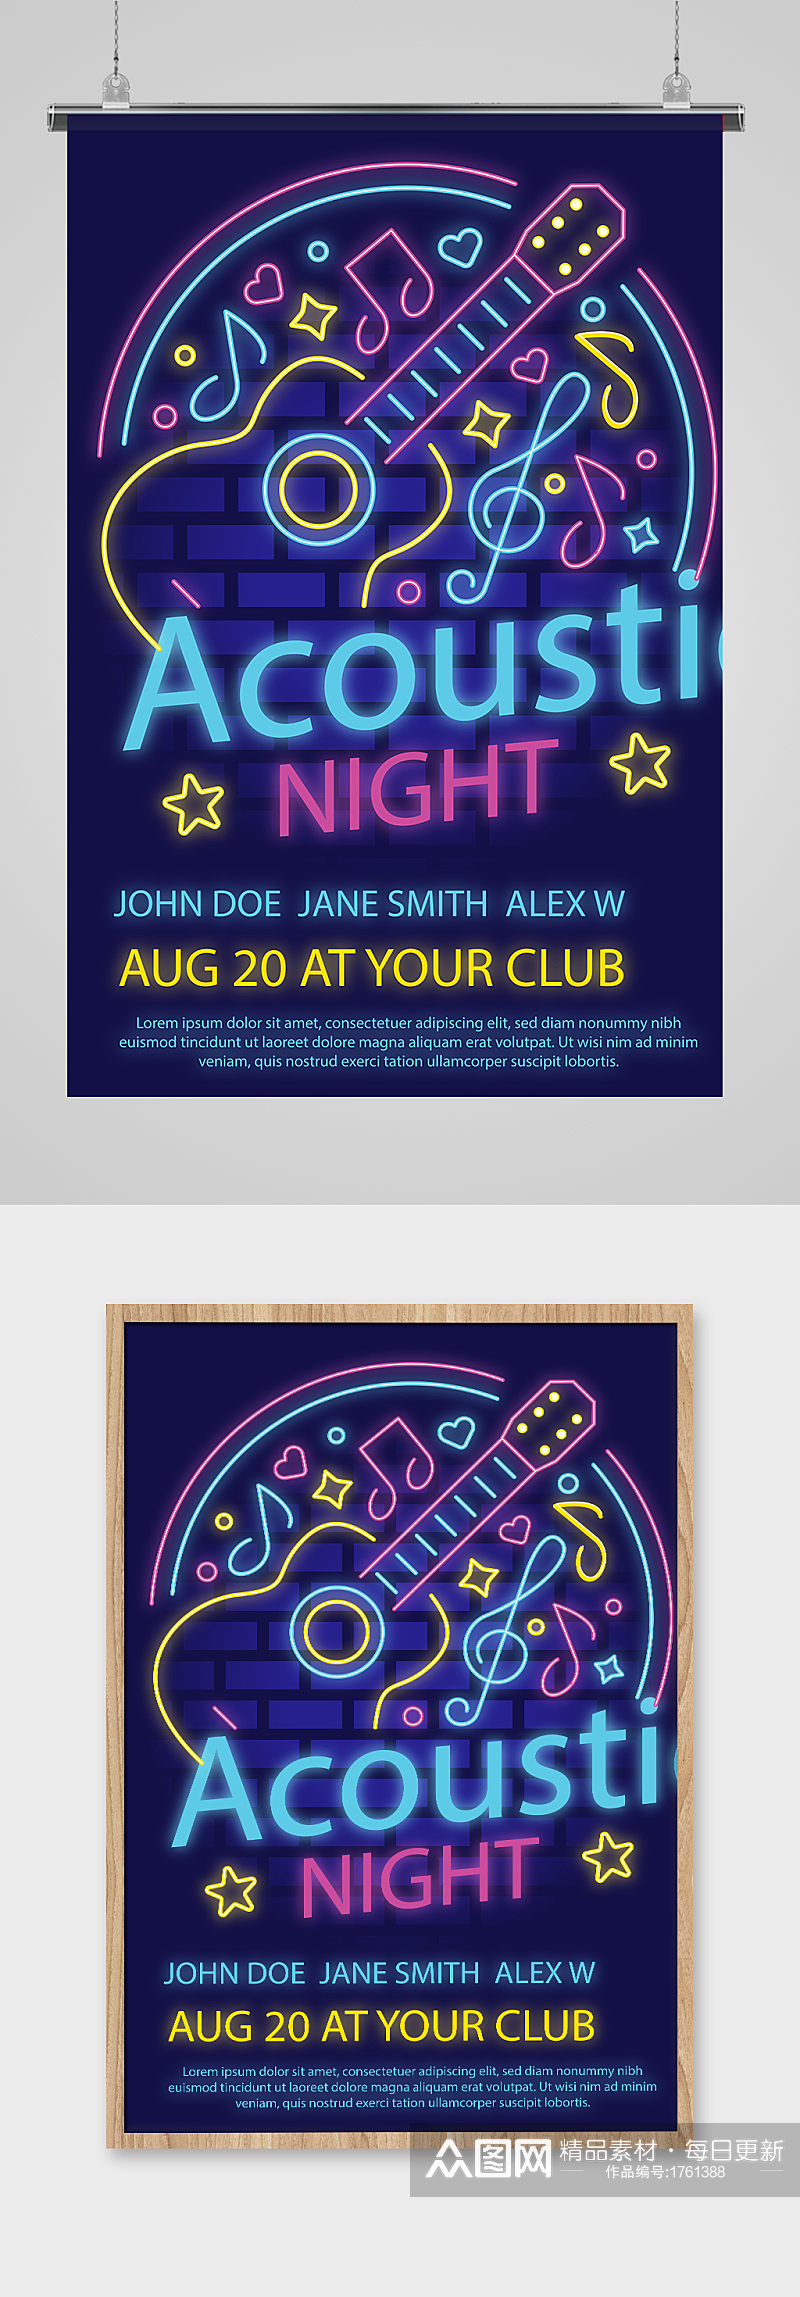 霓虹灯效果酒吧音乐节宣传 吉他海报设计素材